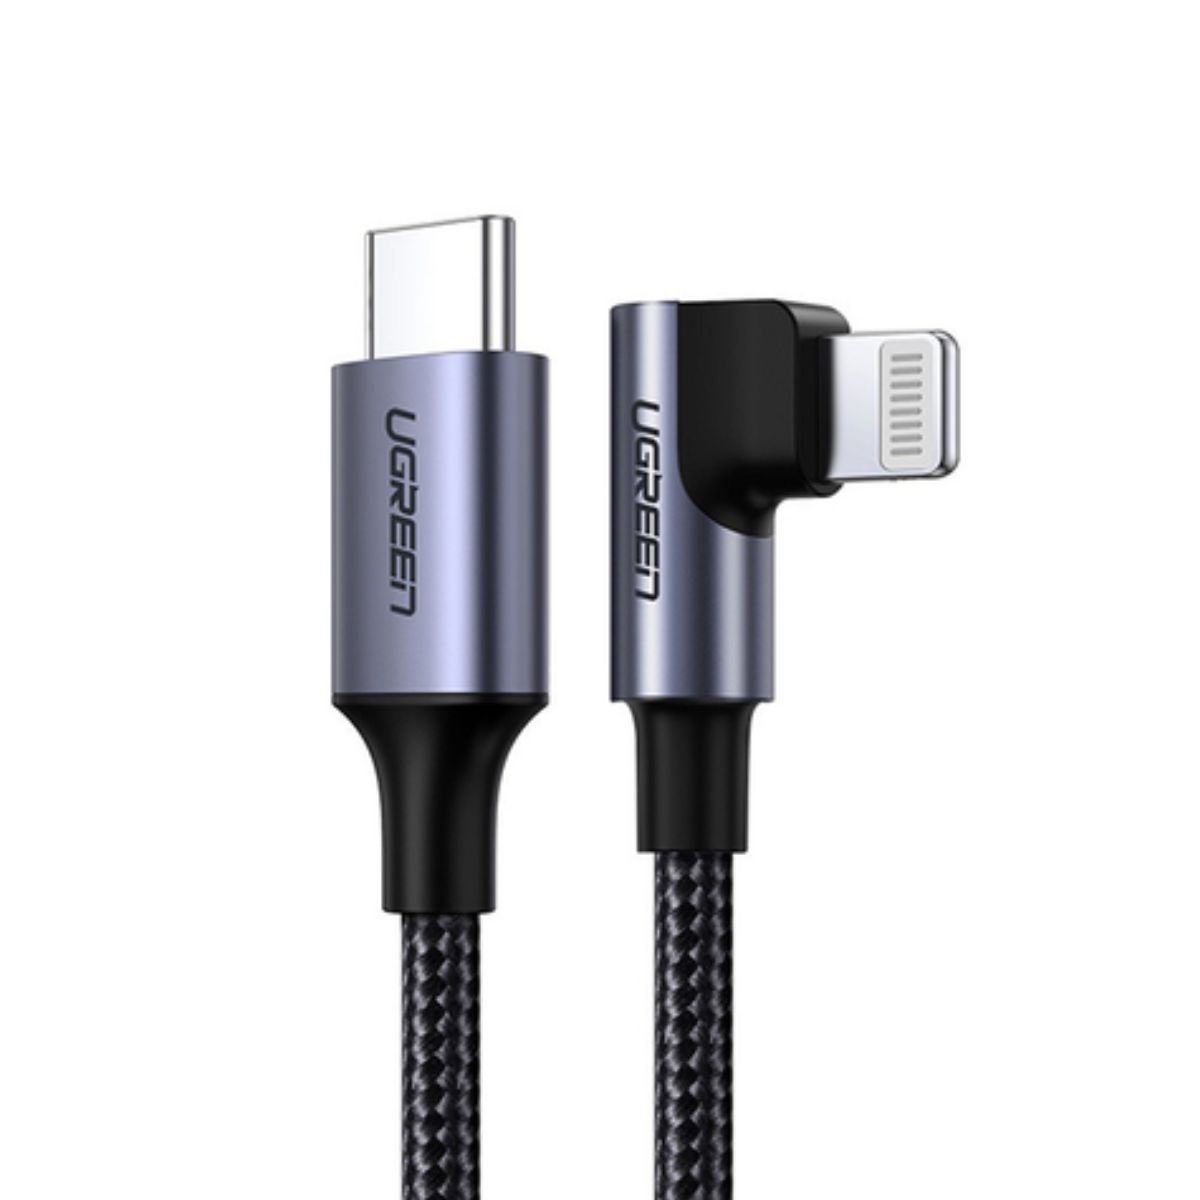 Cáp sạc 2m USB Lightning vuông góc Ugreen 60765 US305 màu đen, tốc độ 480Mbps, sạc nhanh 3A